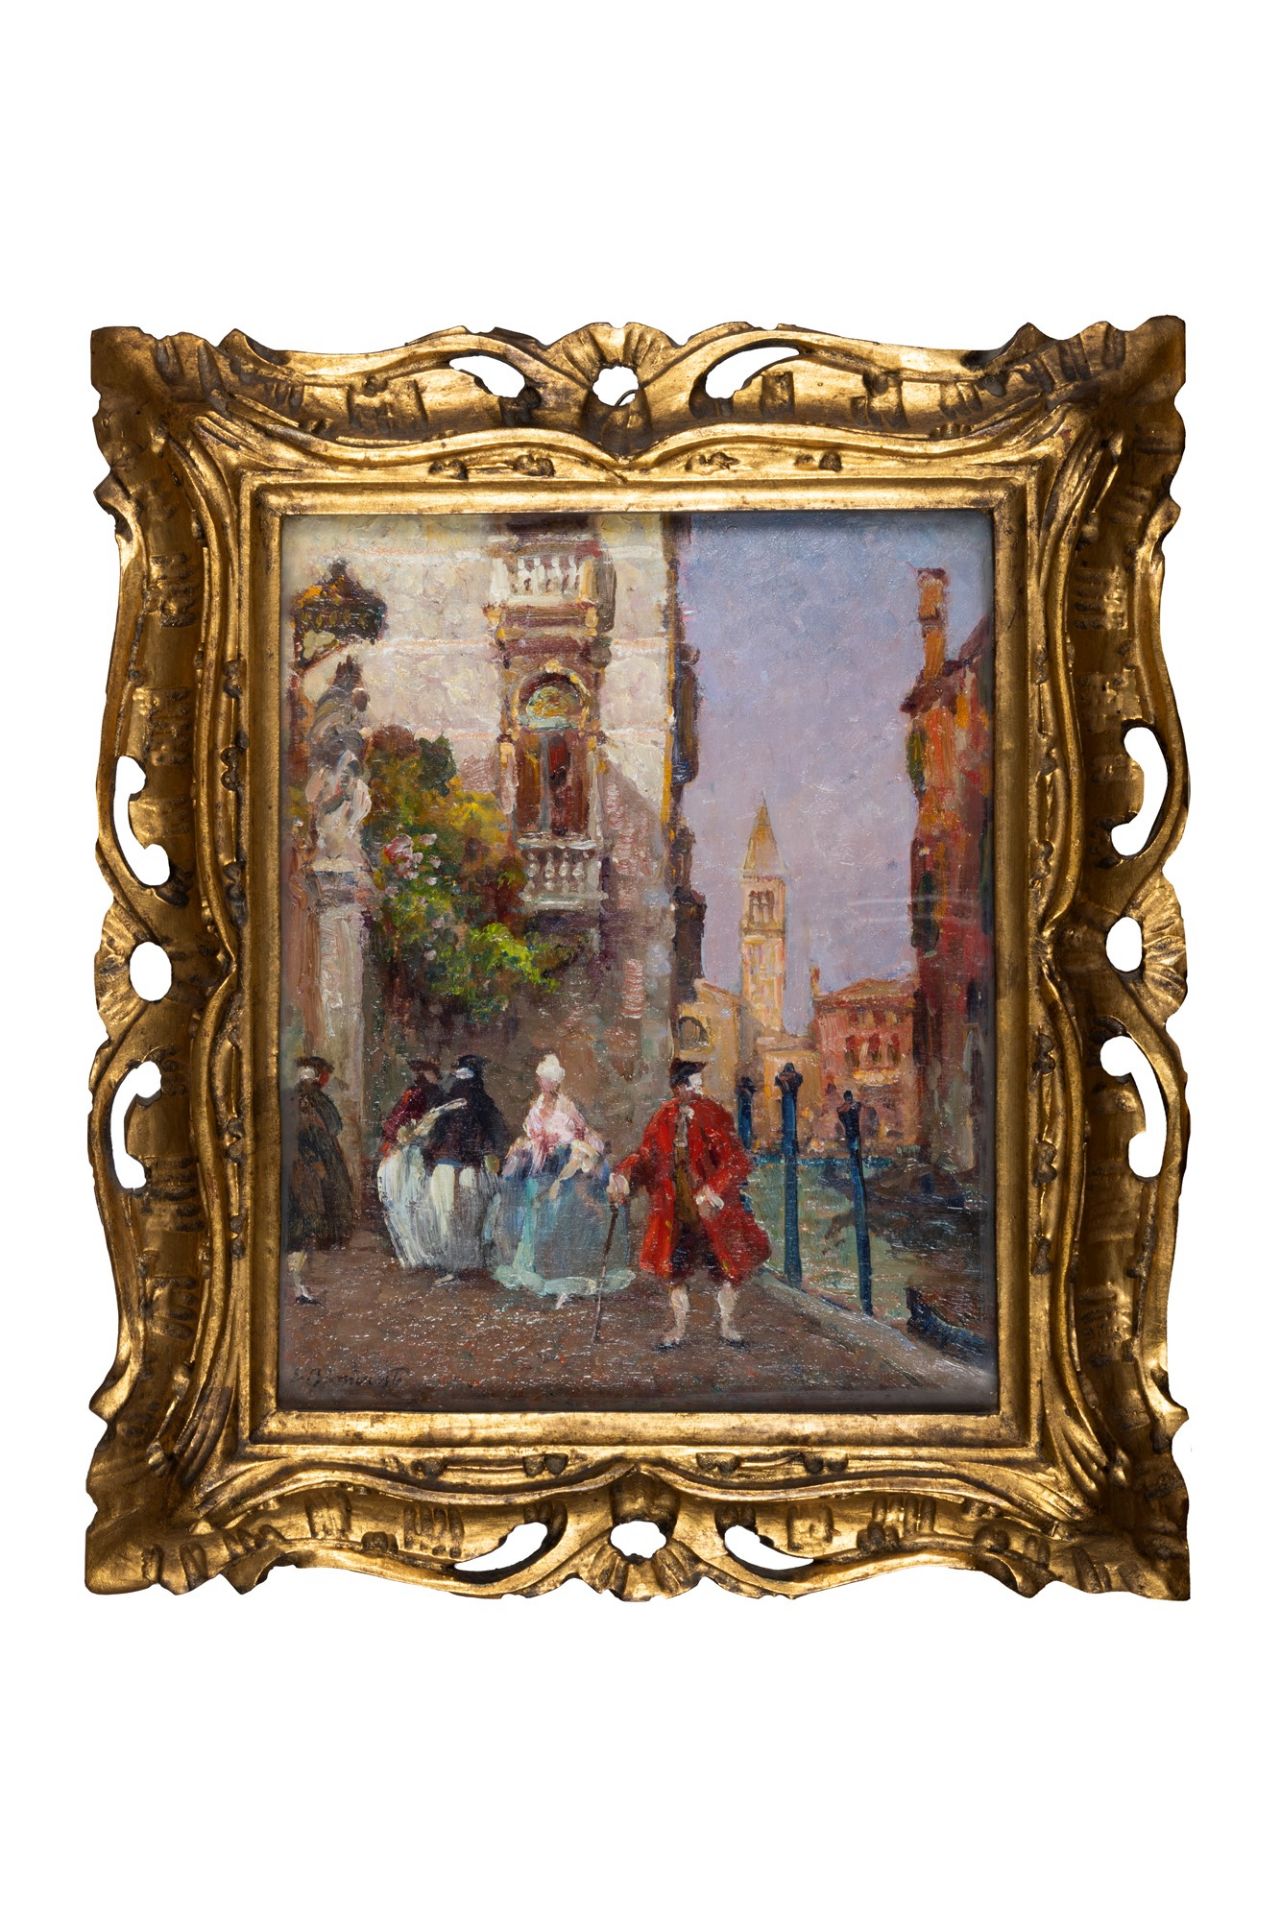 Eugenio Bonivento (Chioggia 1880-Milano 1956) - Venice, Palazzo Rezzonico - Image 2 of 3